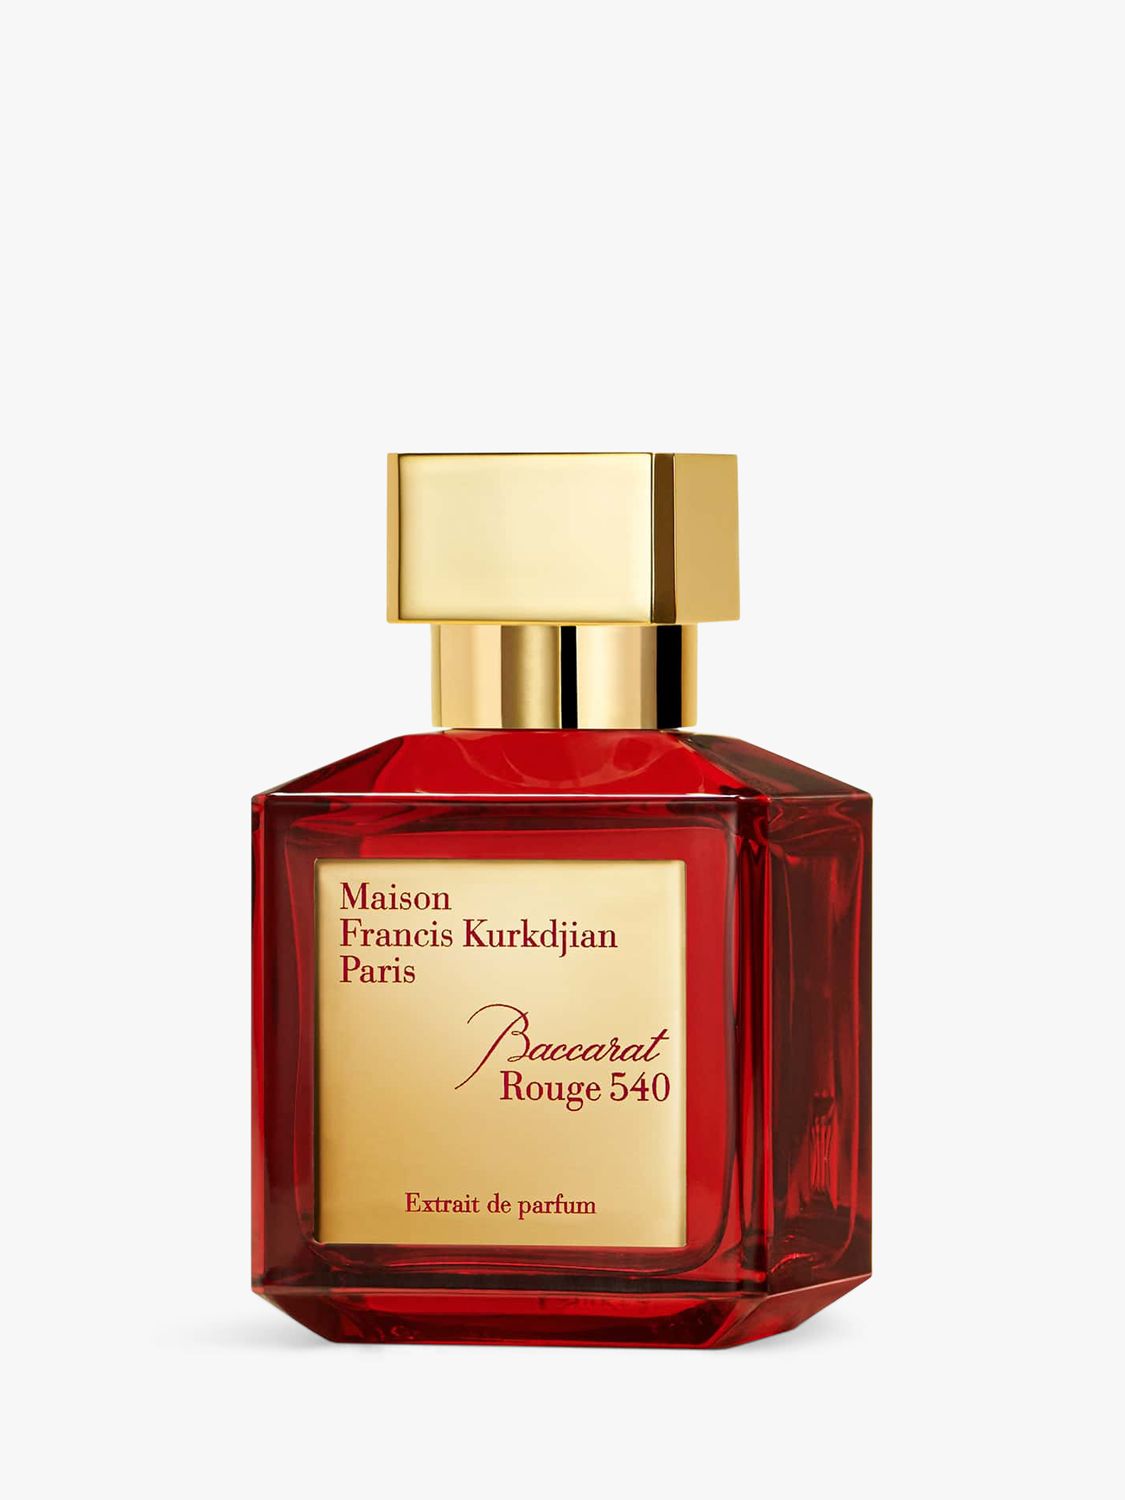 Maison Francis Kurkdjian Baccarat Rouge 540 Extrait de Parfum, 70ml at ...